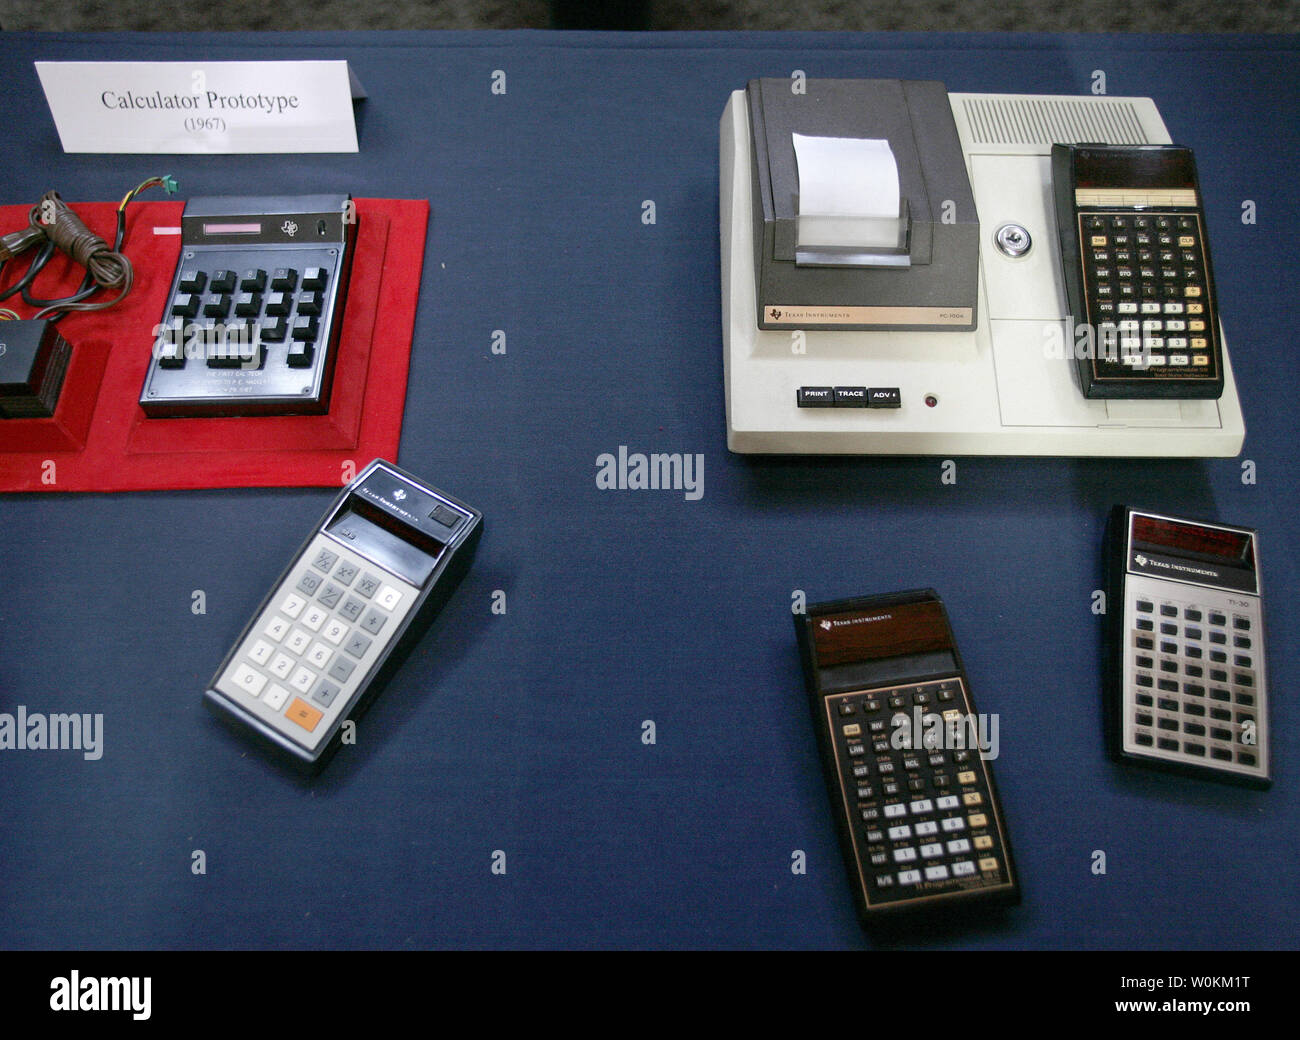 Diversi Texas Instruments hand-held calcolatrici sono visualizzati durante una cerimonia in occasione del quarantesimo anniversario dell'invenzione del calcolatore elettronico presso il Museo Nazionale di Storia Americana a Washington il 25 settembre 2007. (UPI foto/Yuri Gripas) Foto Stock